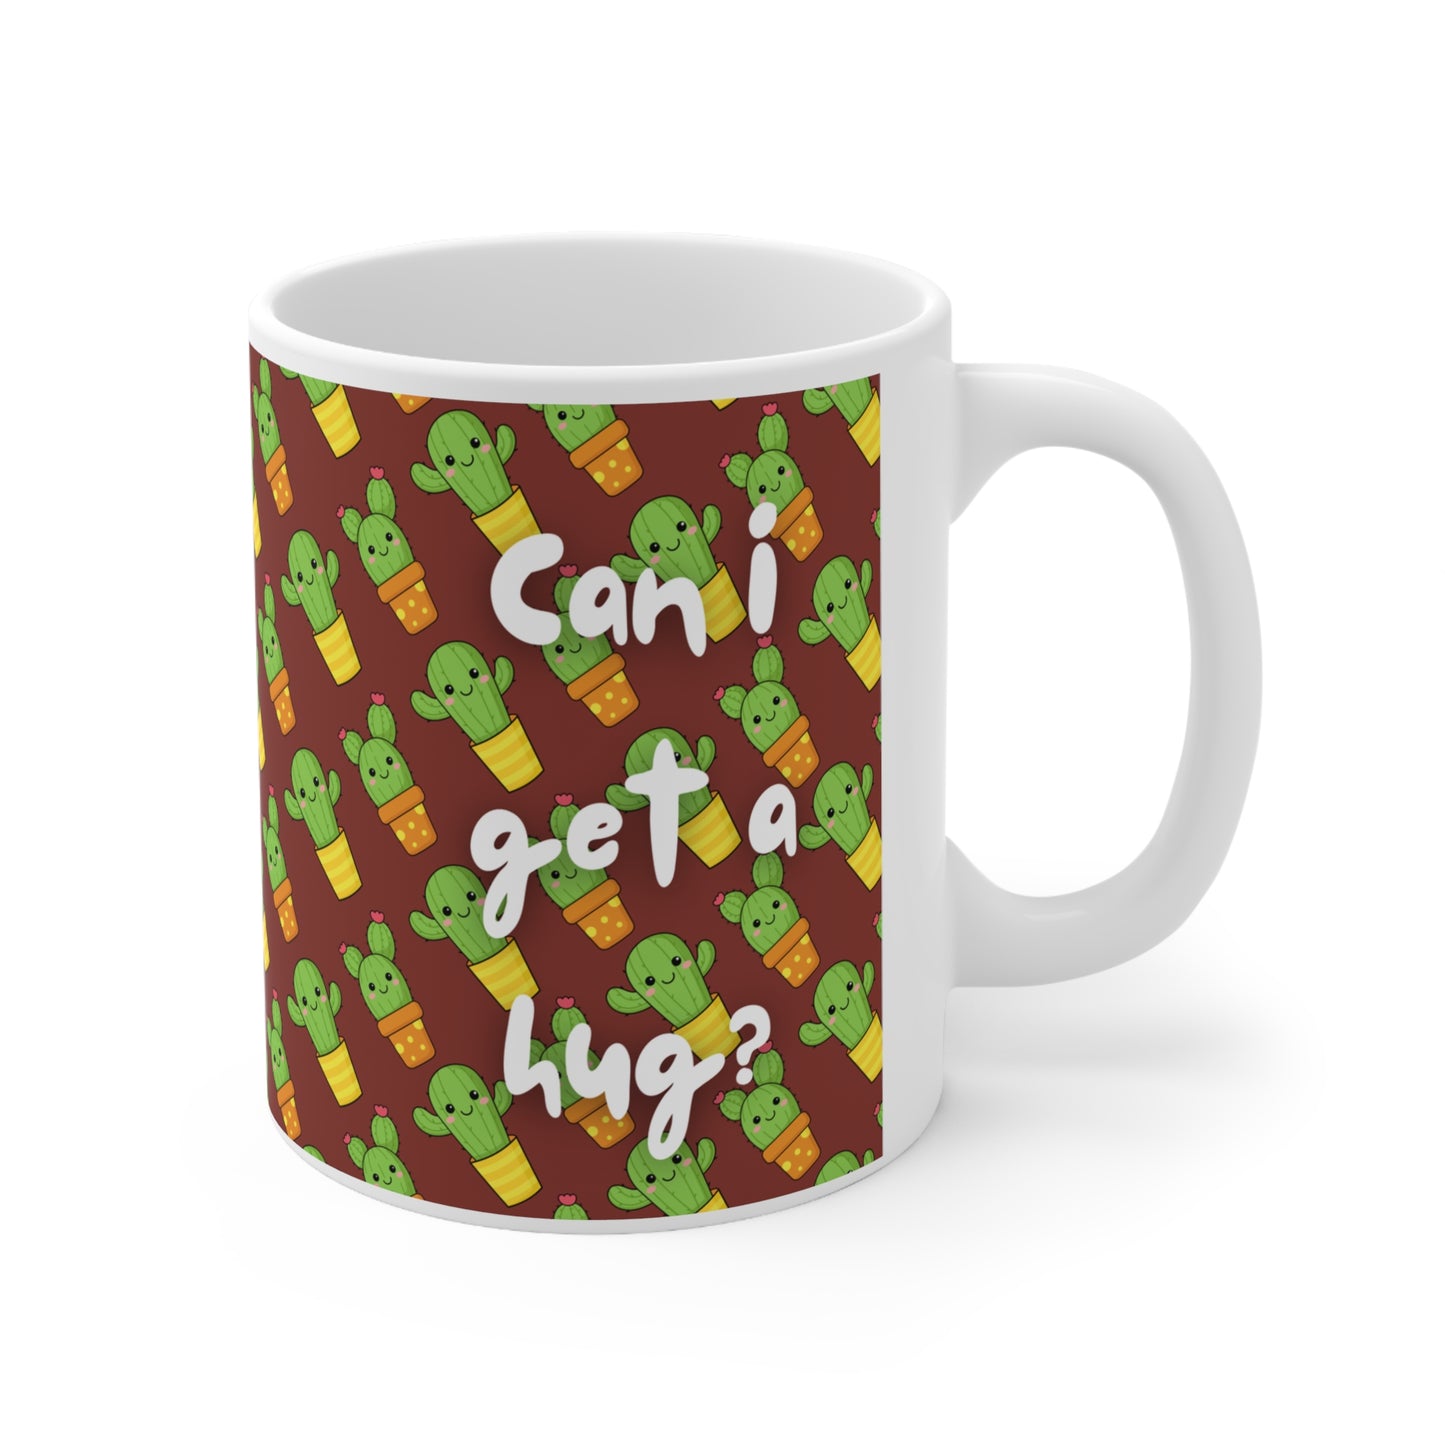 Can I Get A Hug Cactus Mug 11oz